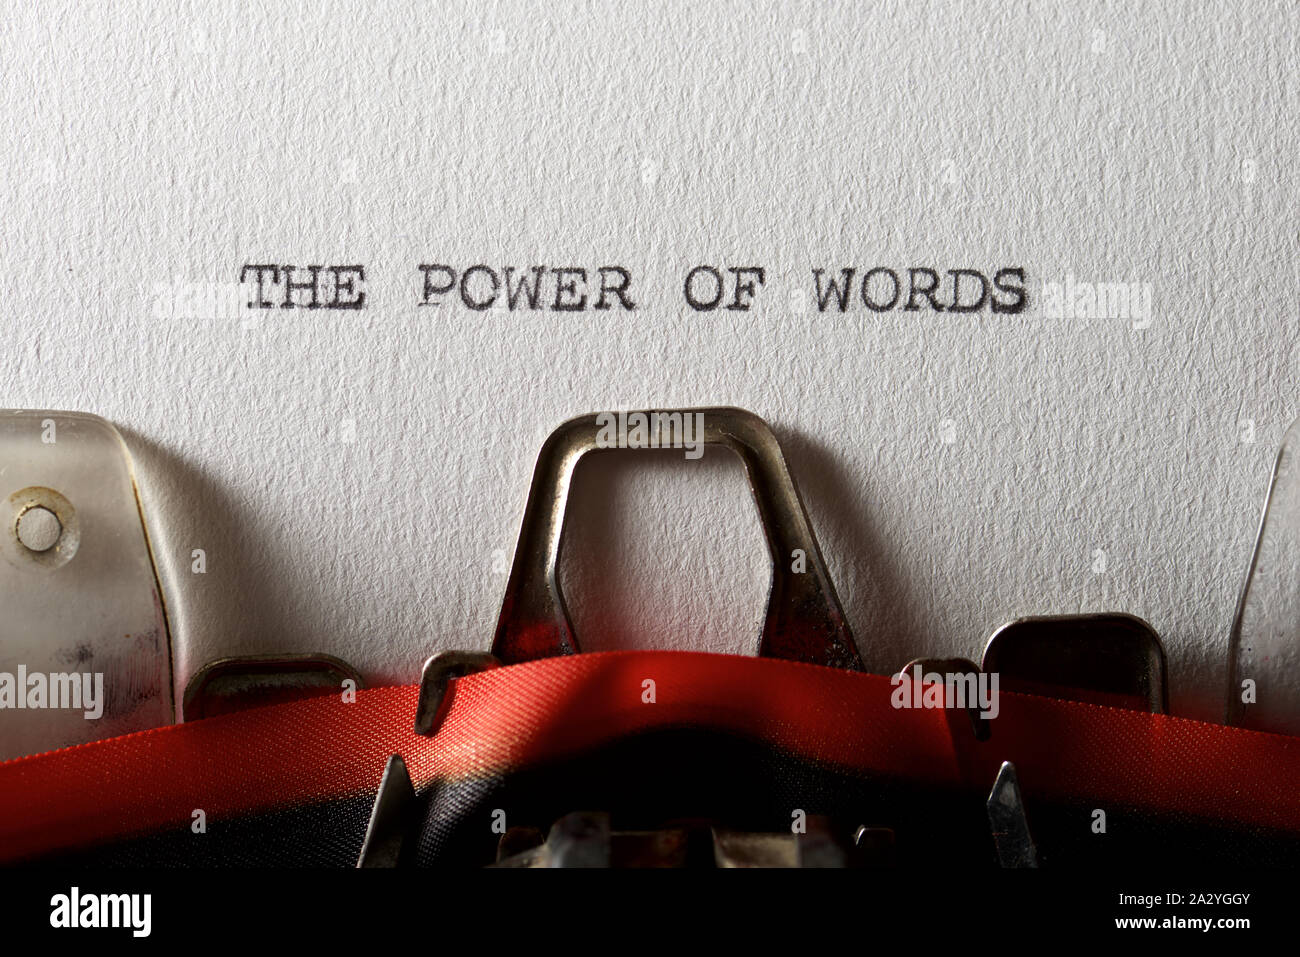 Der Satz, der Macht der Worte, mit Schreibmaschine geschrieben. Stockfoto